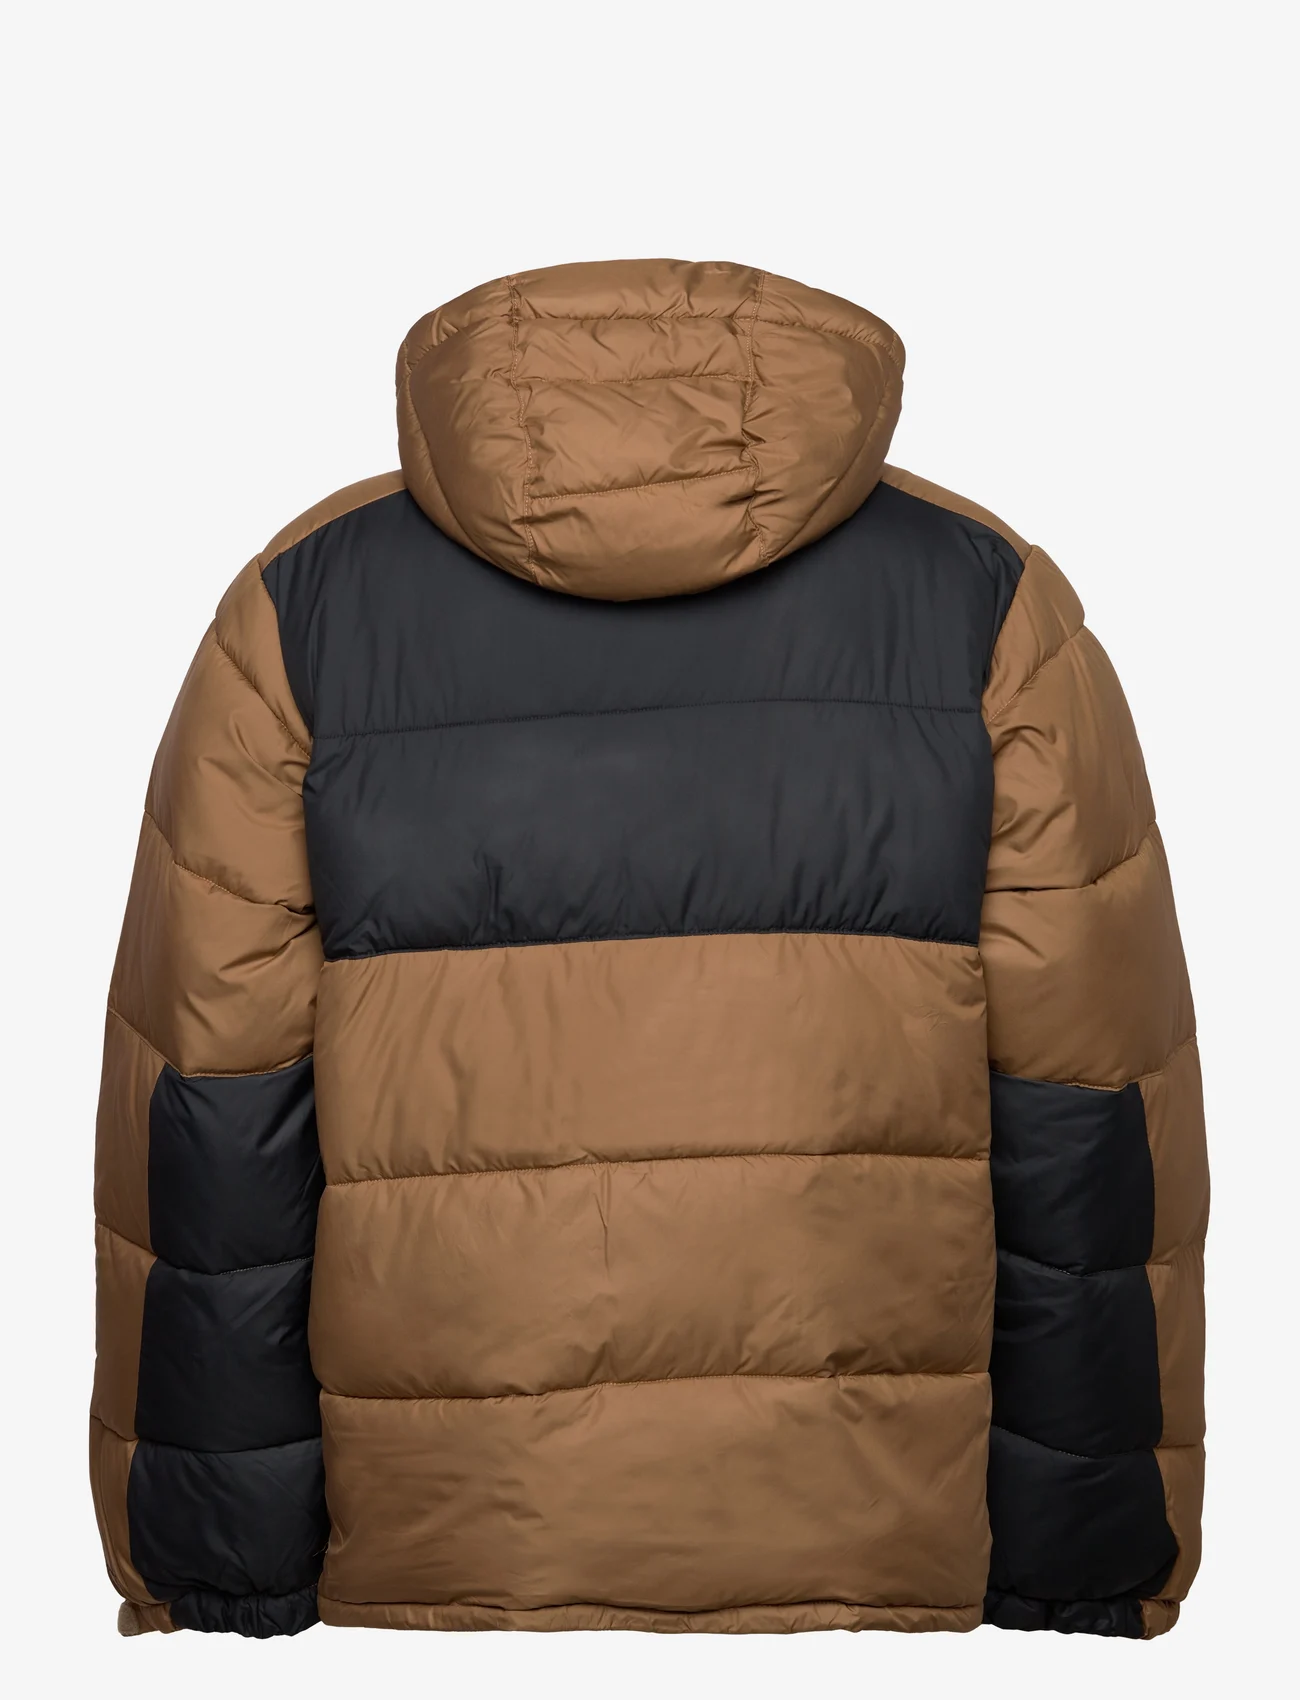 Columbia Sportswear - Pike Lake II Hooded Jacket - dūnu jakas - delta, black - 1